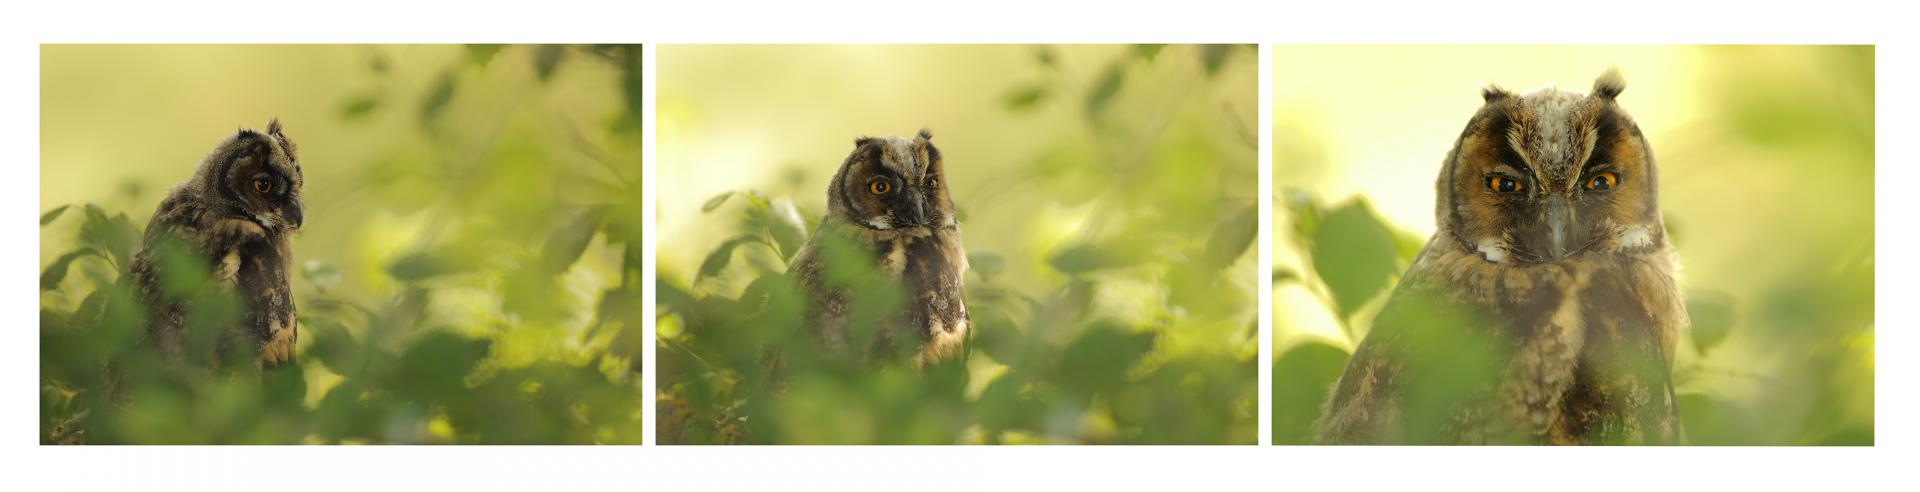 Hibou moyen-duc Asio otus - Long-eared Owl